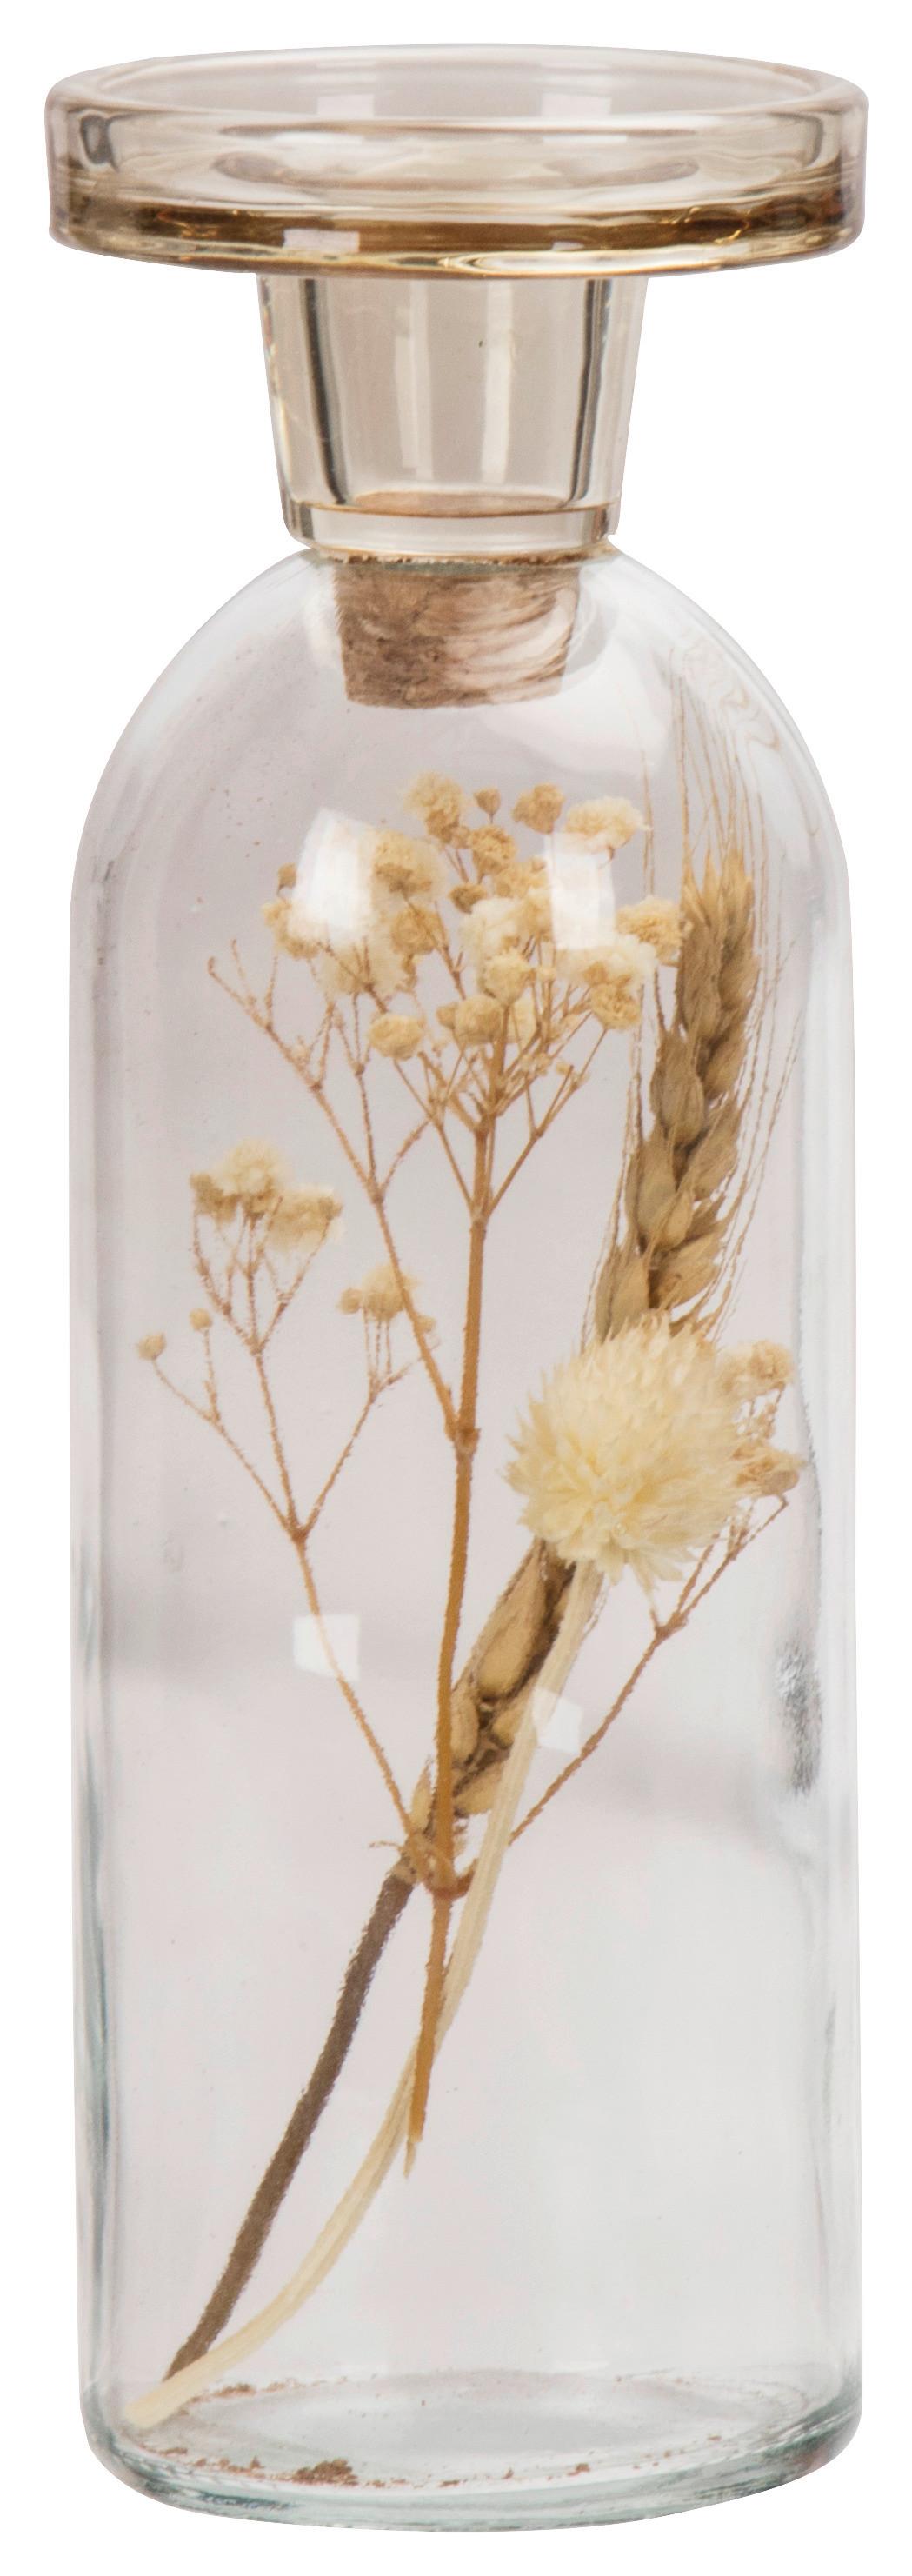 Stojan na svíčky Bloom, V: 22cm - šedá/oranžová, přírodní materiály/sklo (7,5/22cm) - Modern Living